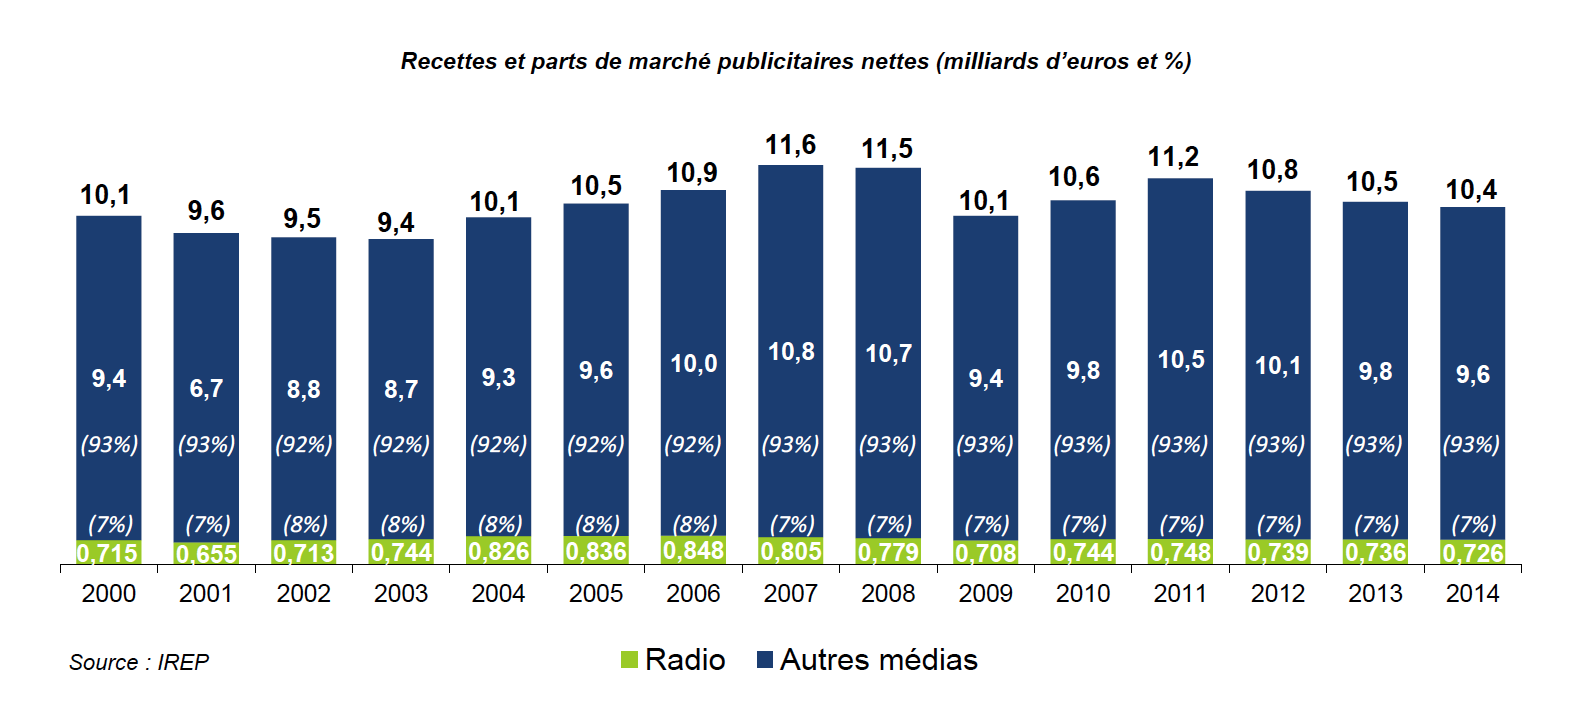 En 2014, les recettes publicitaires nettes en radio ont atteint 726 millions d’euros, en baisse de 1,3% par rapport à 2013, pour une part de marché publicitaire stable de 7% dans l’ensemble plurimédias